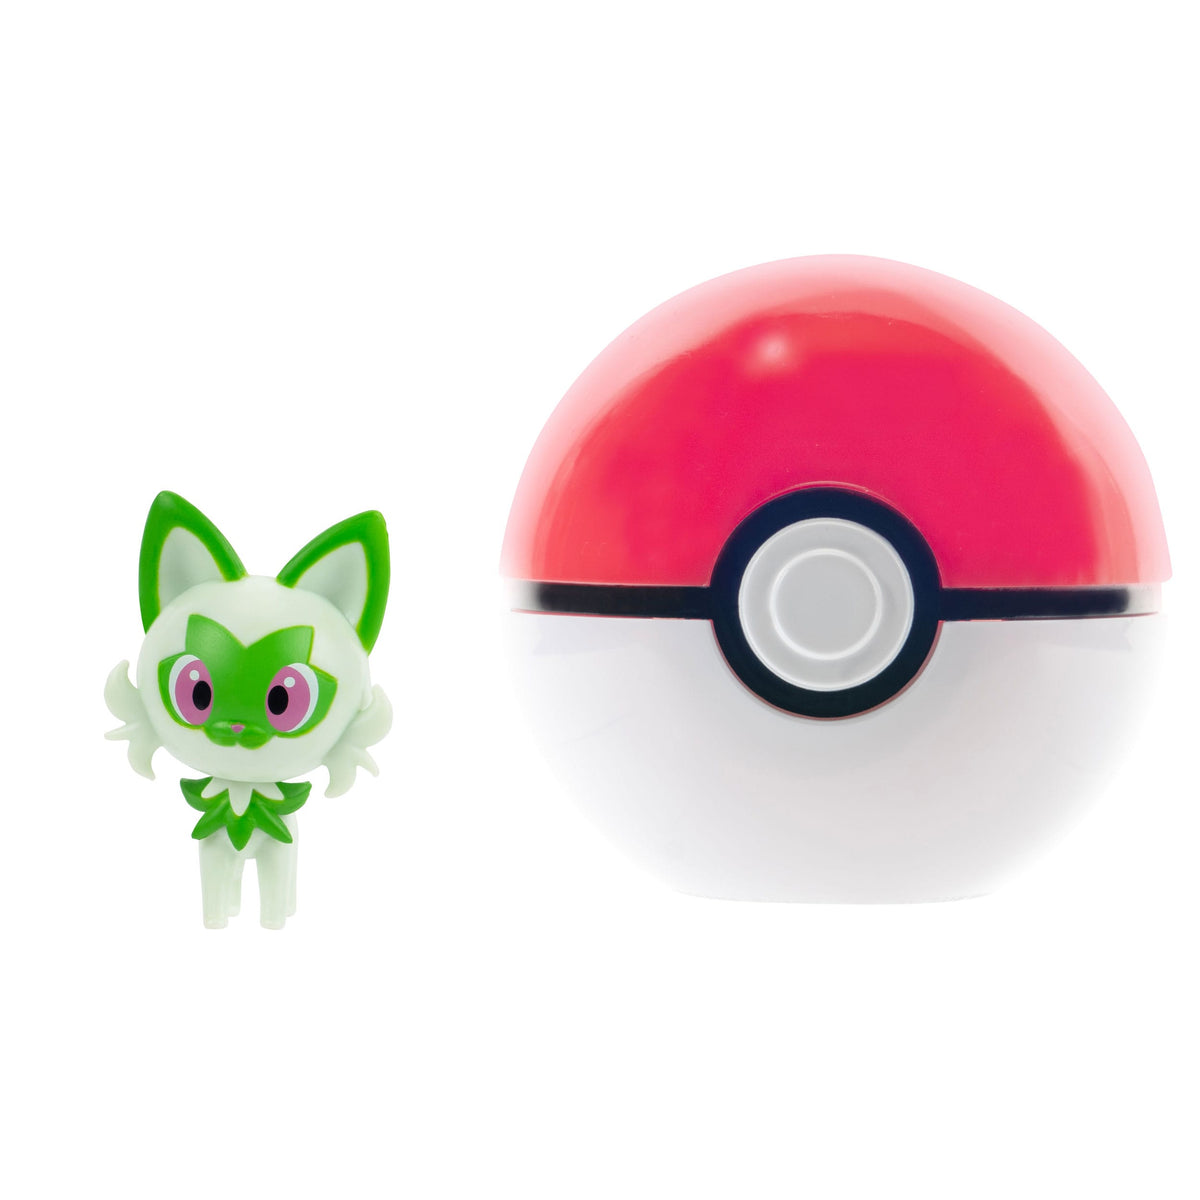 Pokémon - Clip'n'Go Poké Balls - Felori & Pokéball (Jazwares)